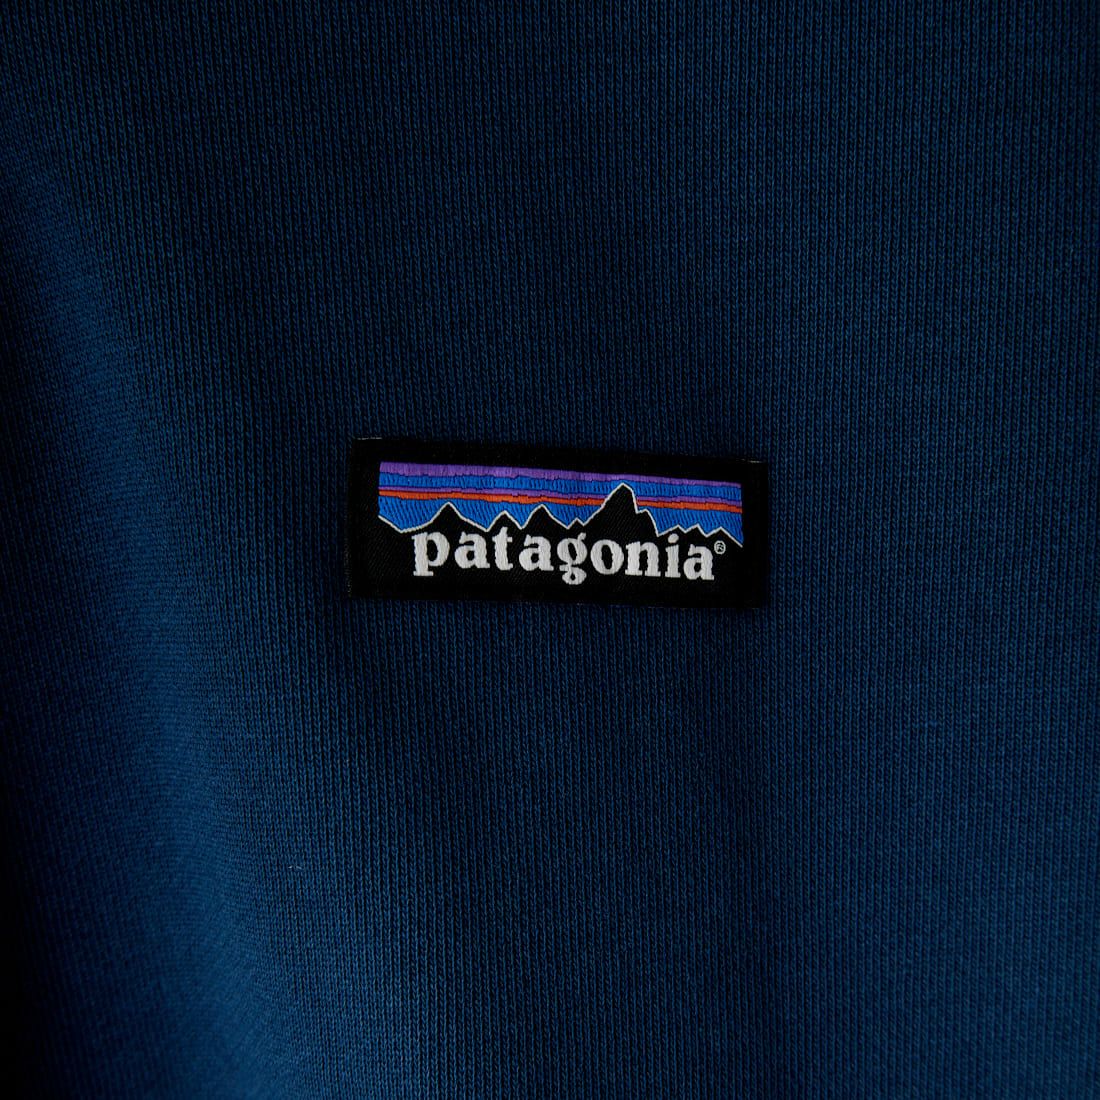 patagonia [パタゴニア] リジェネラティブオーガニックサーティファイドコットン スウェットフーディ [26330] TIDB